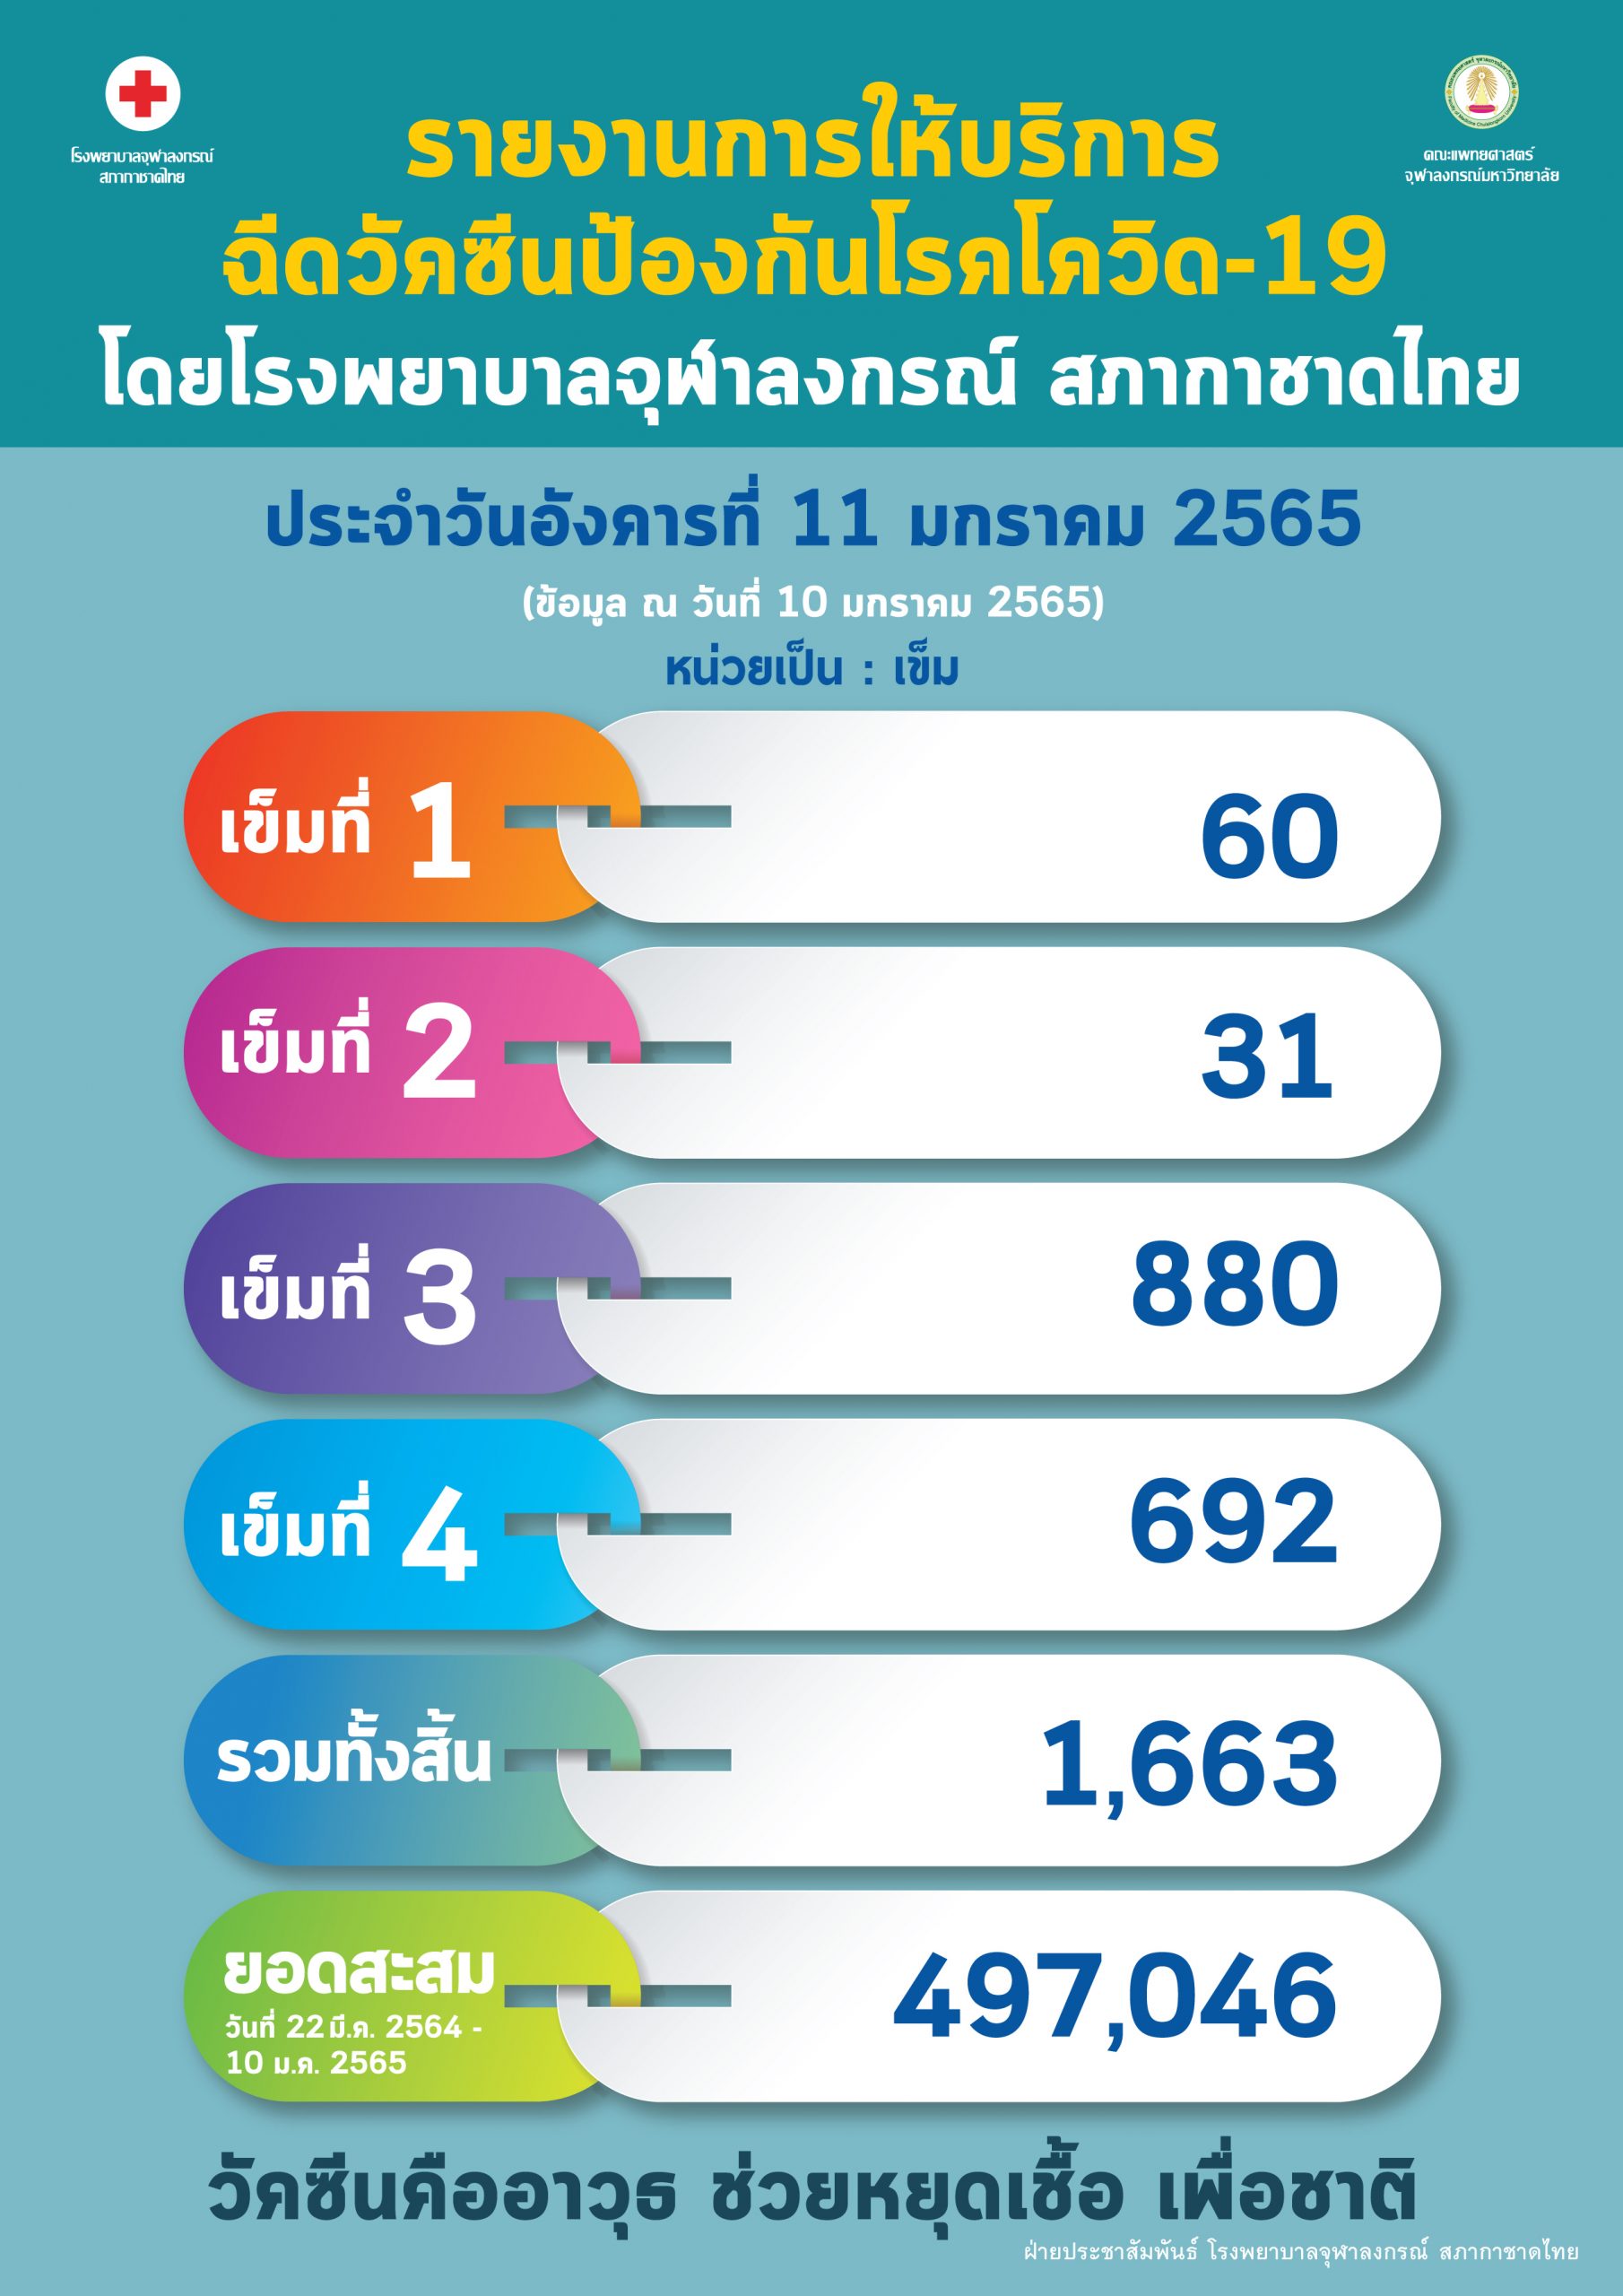 รายงานการให้บริการฉีดวัคซีนป้องกันโรคโควิด-19 โดยโรงพยาบาลจุฬาลงกรณ์ สภากาชาดไทย ประจำวันอังคารที่ 11 มกราคม 2565